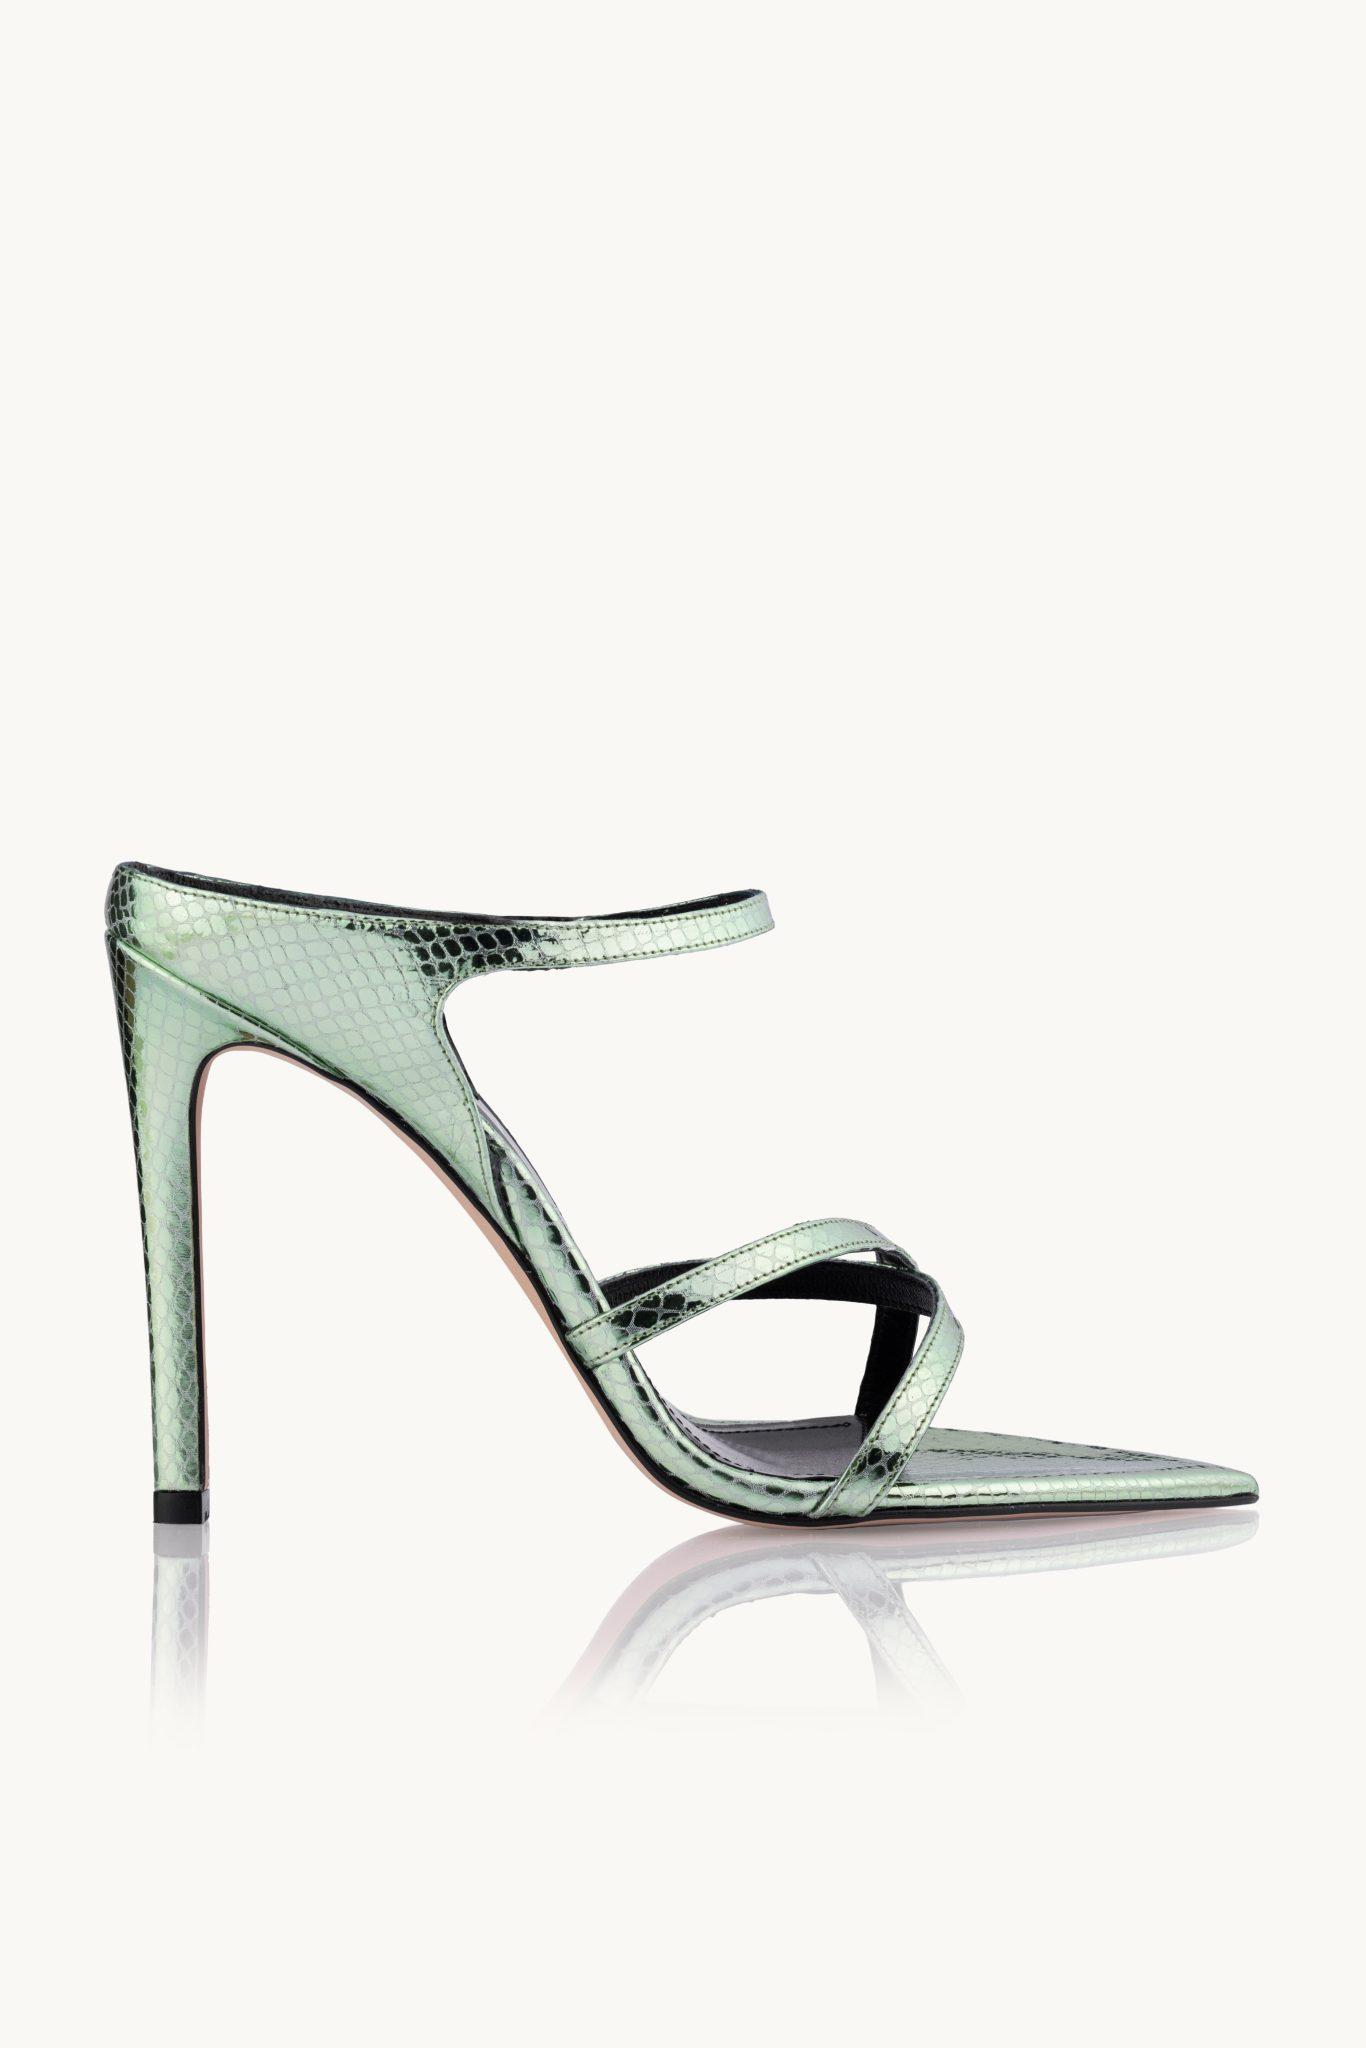 Selected image for NAKA Ženske sandale Emerald Glamour zelene